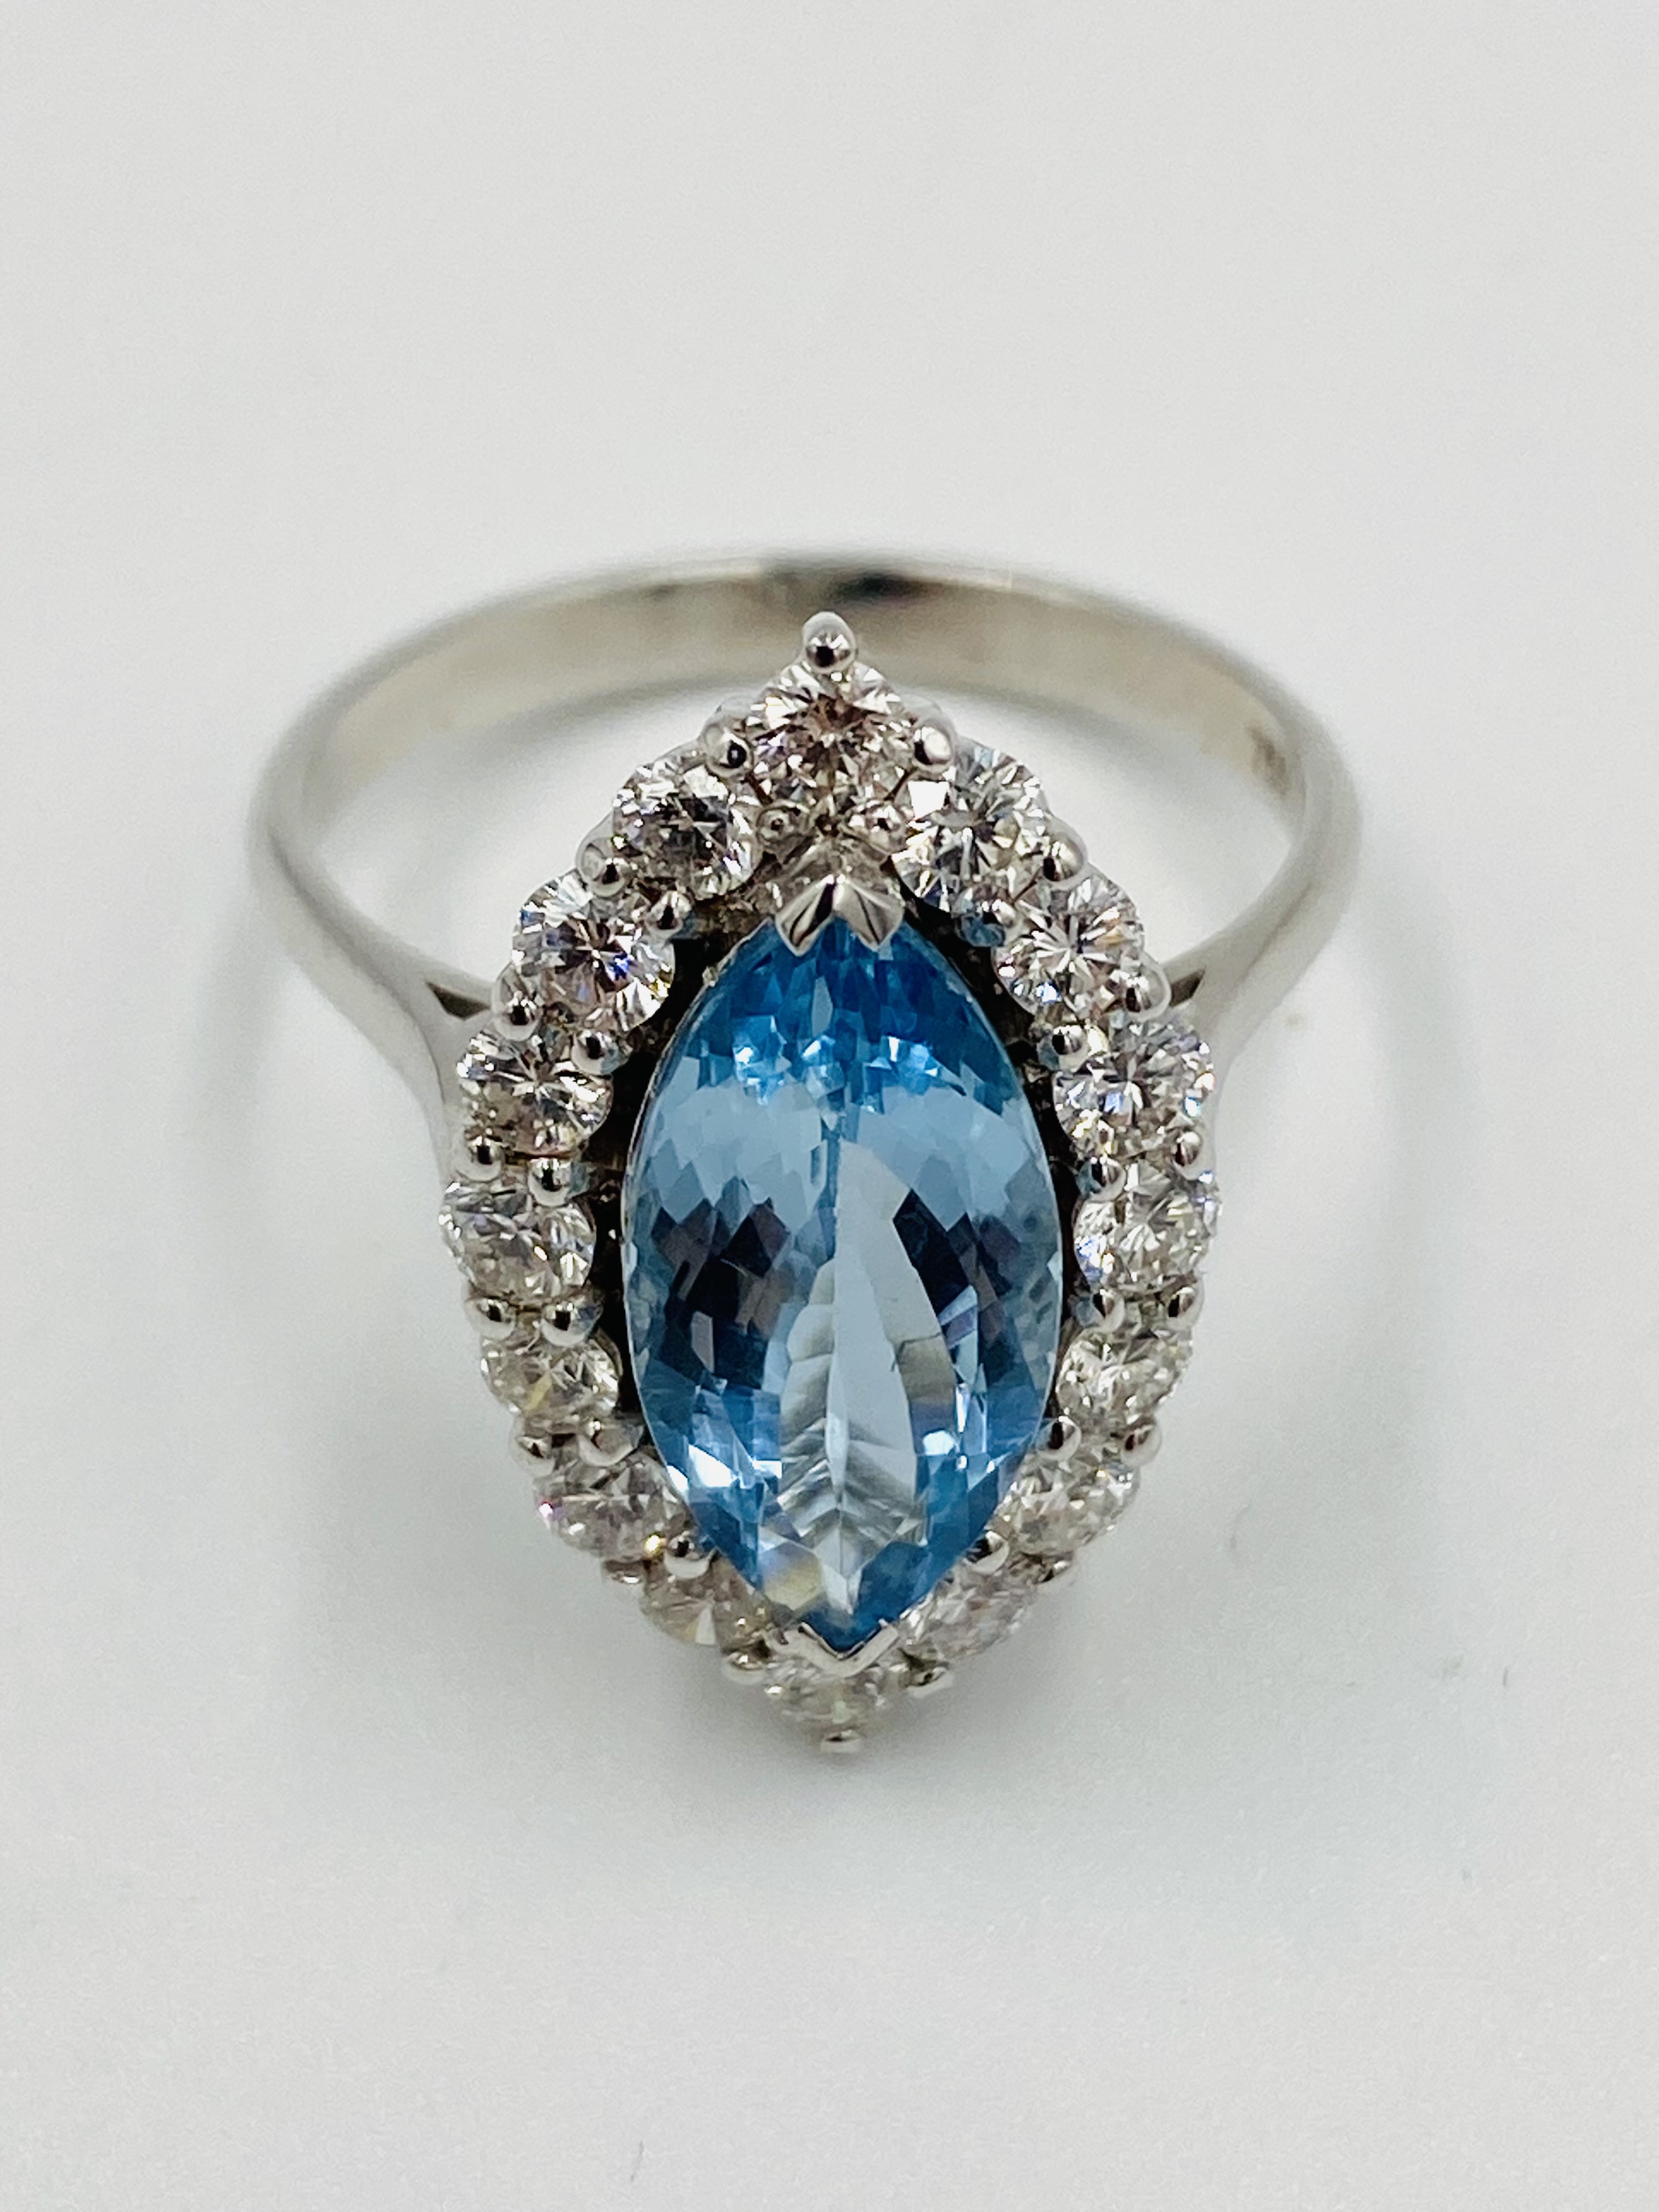 18ct white gold, aquamarine and diamond ring - Image 5 of 5